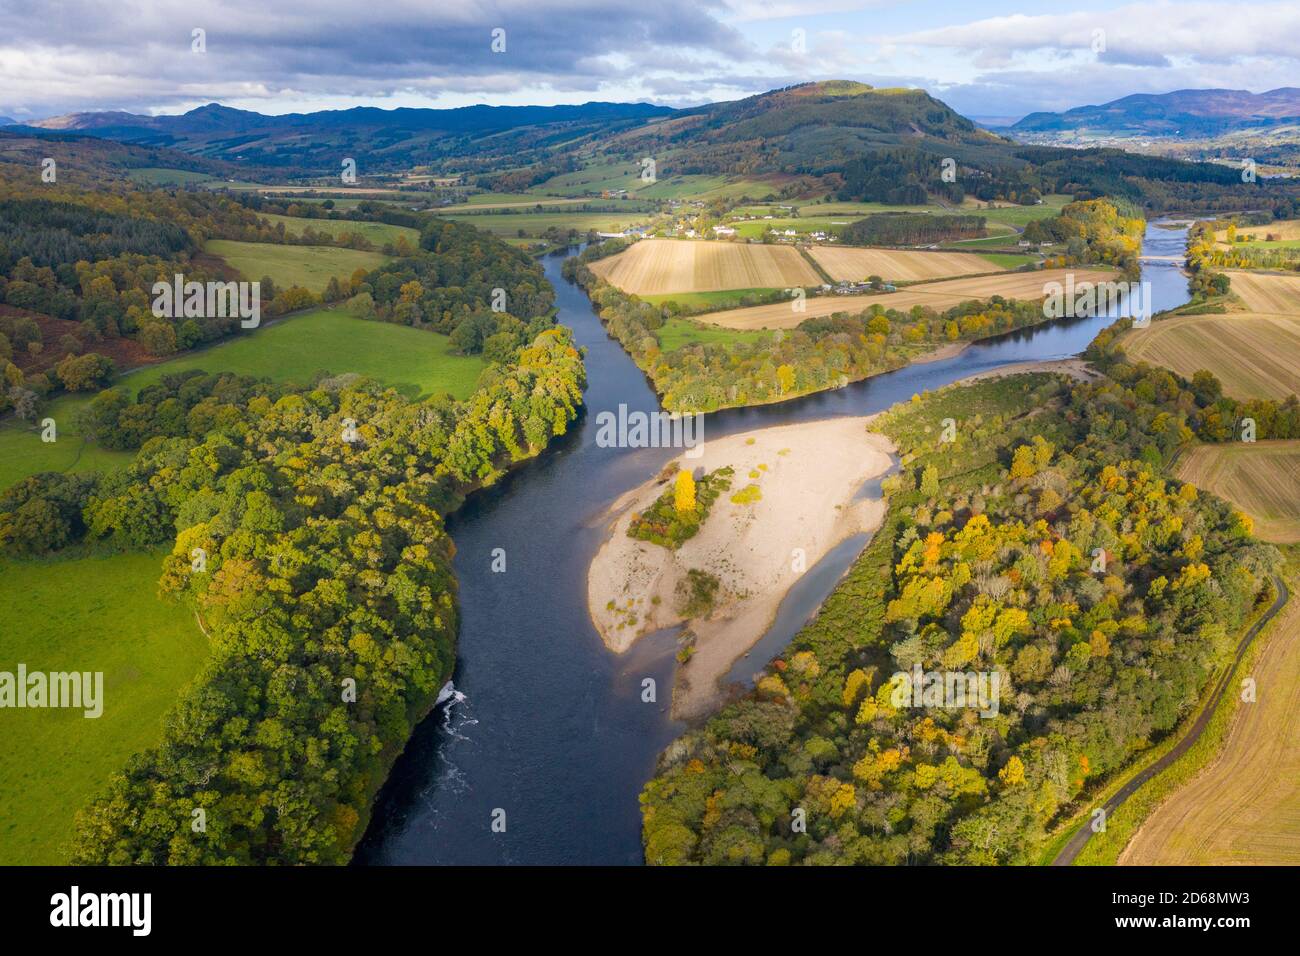 Vista de otoño de la confluencia del río Tay y el río Tummel (r) en Ballinluig. Estos son dos de los ríos de salmón más importantes de Escocia. Foto de stock